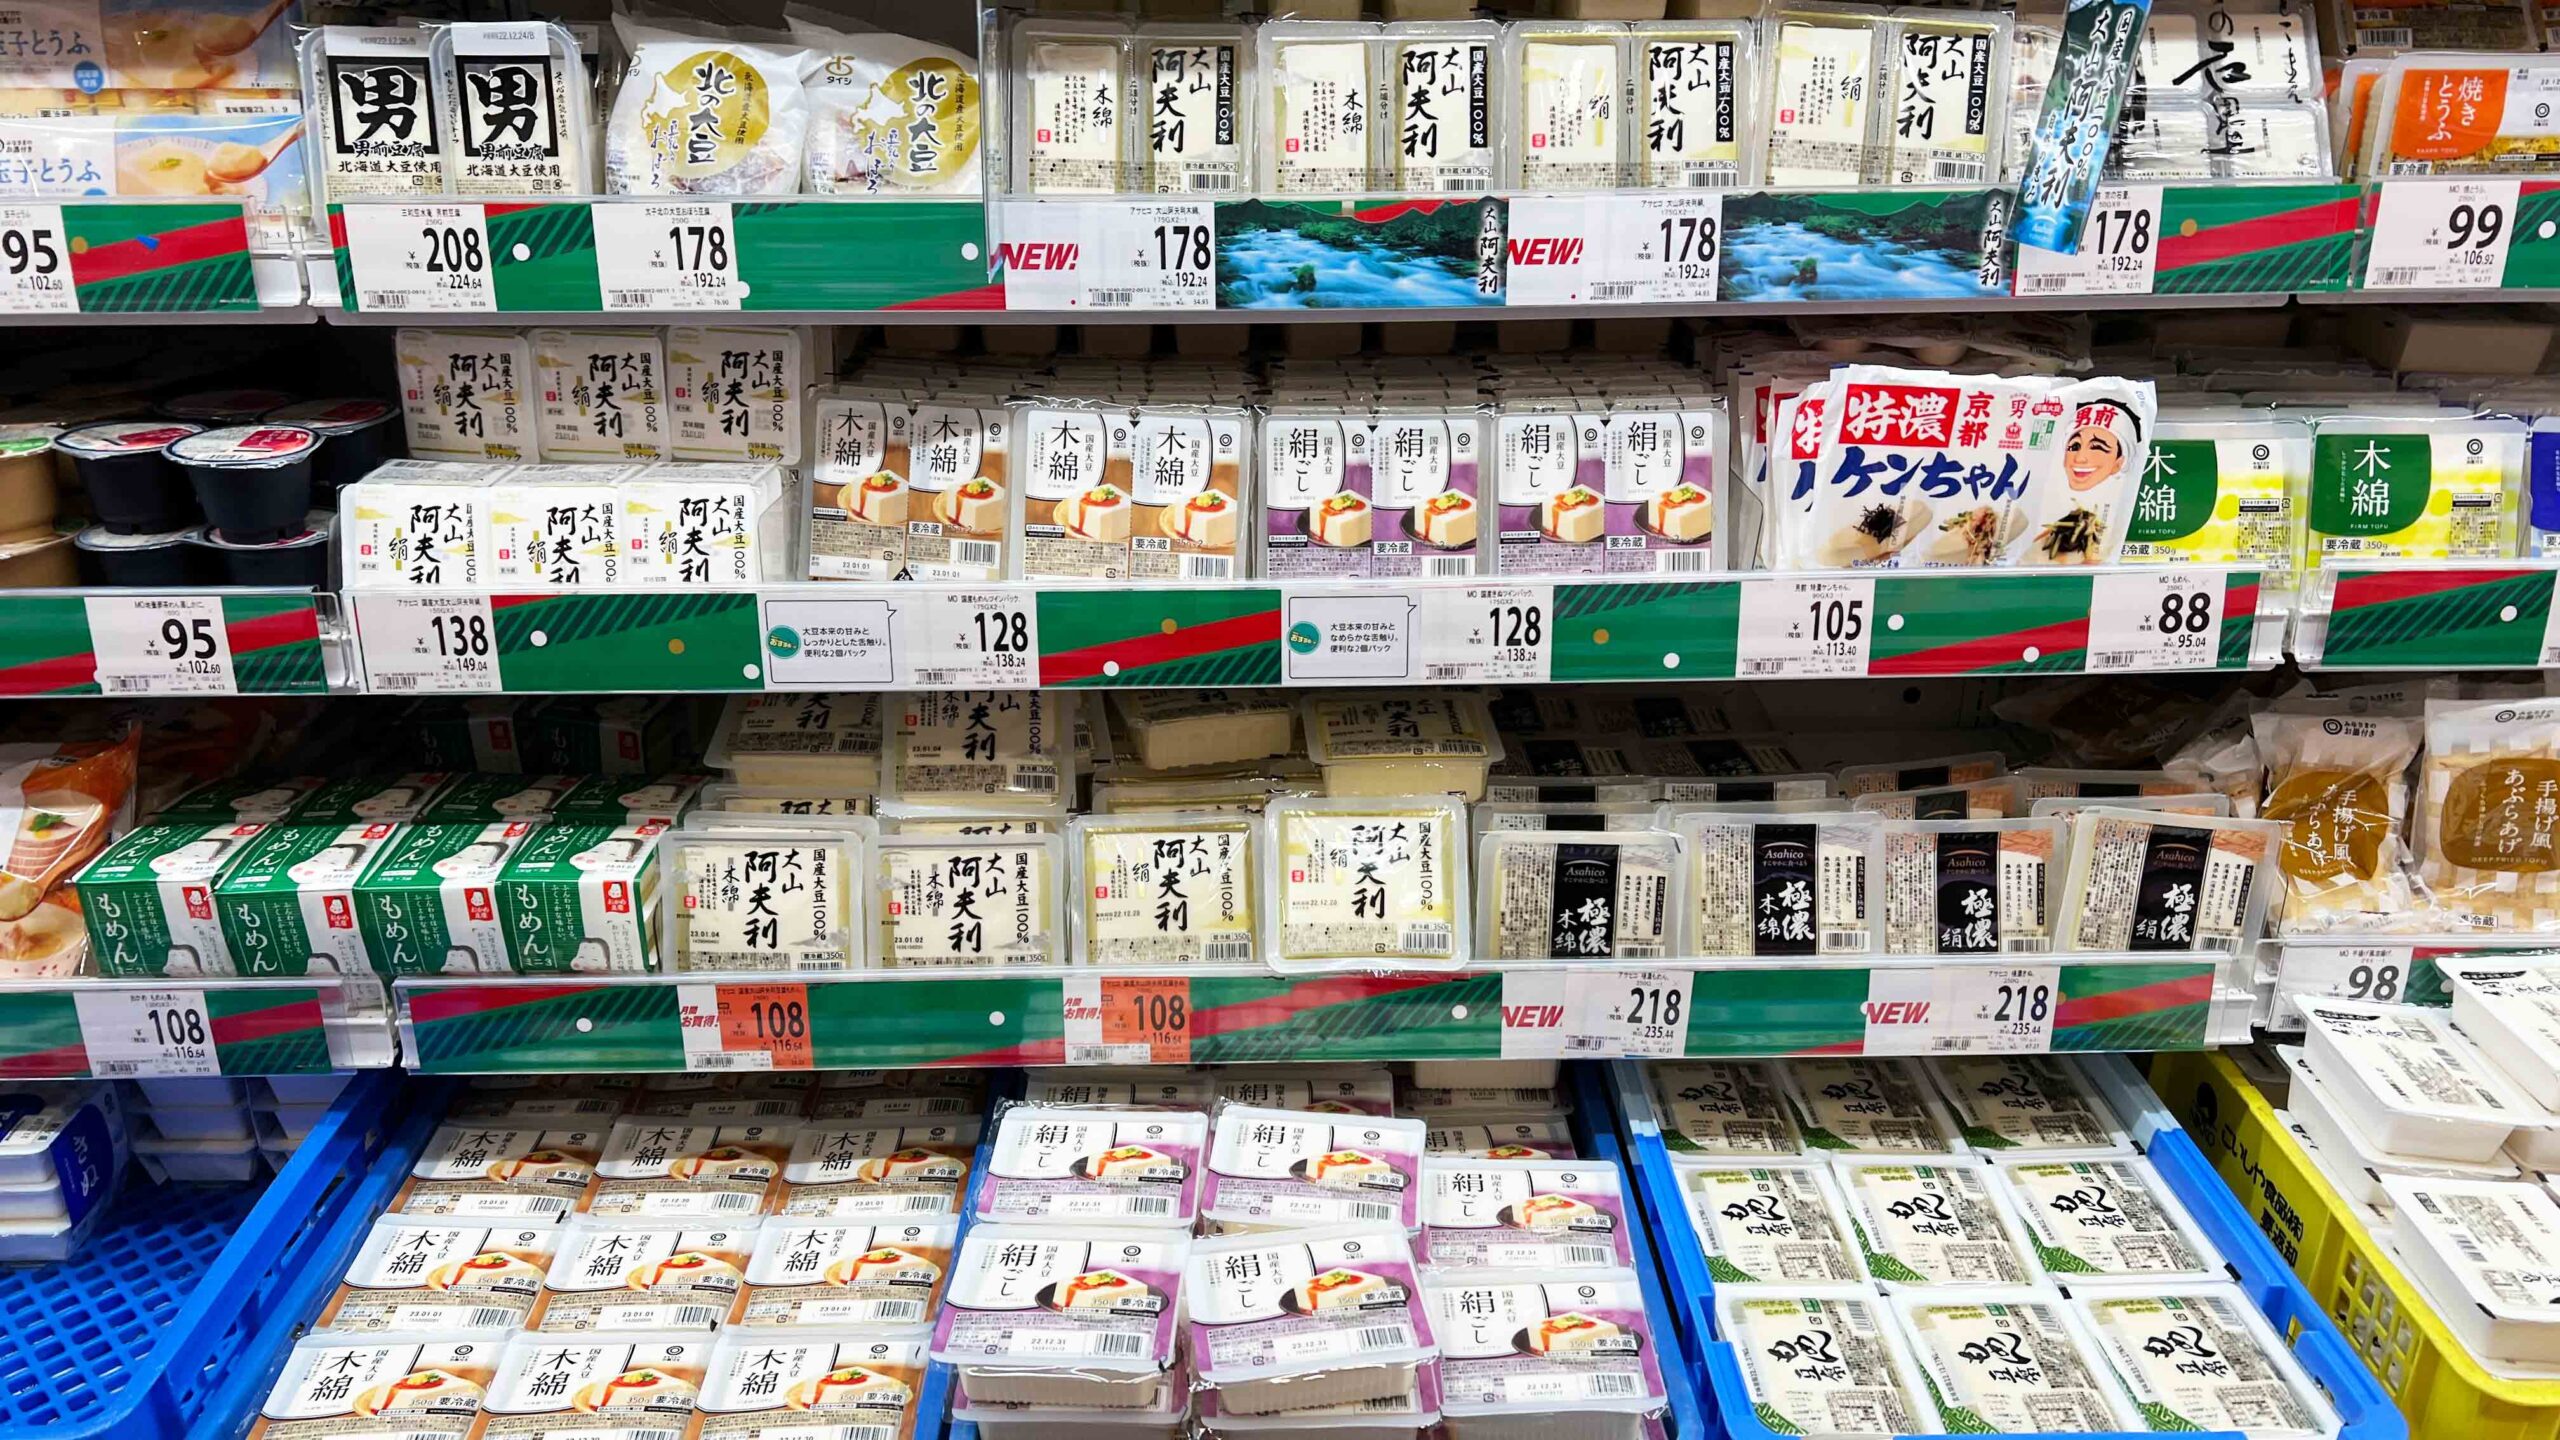 tofuja japanilaisessa kaupassa